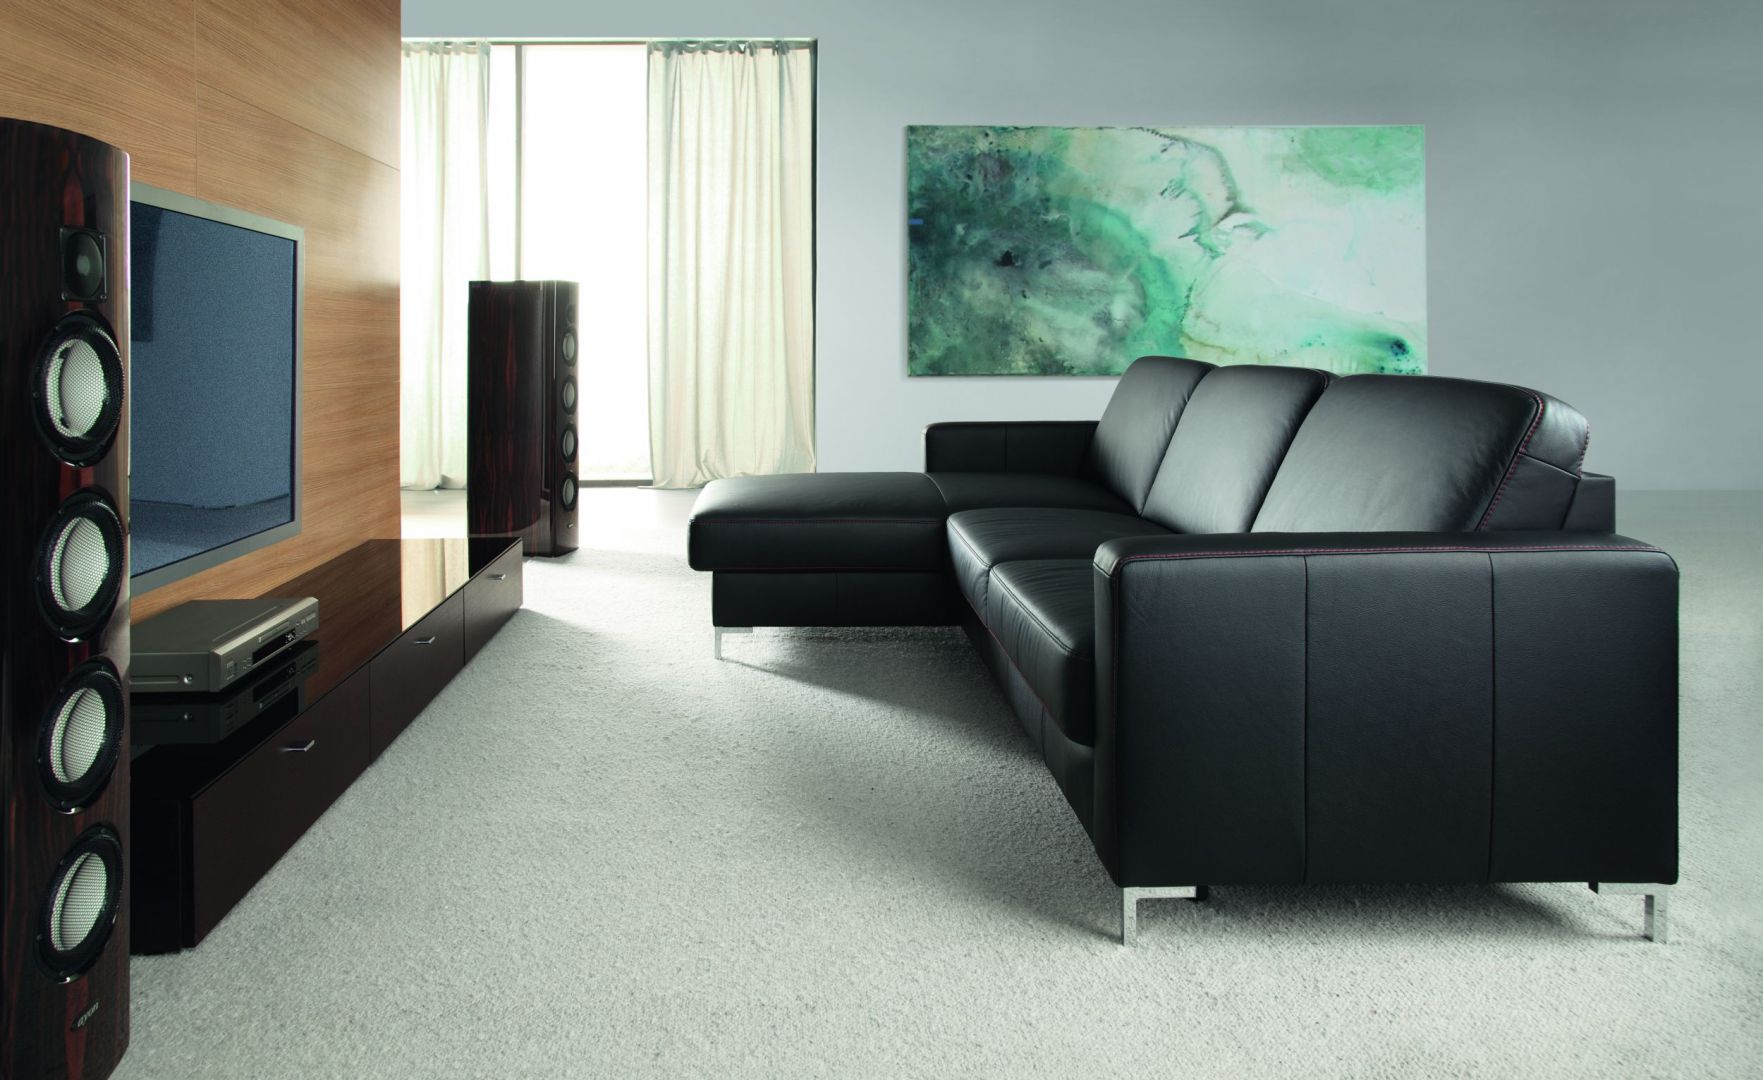 Basic to wygodna sofa, dostępna w wielu ciekawych tkaninach oraz w skórze. Będzie eleganckim dodatkiem w salonie. Cena: dwuosobowa sofa od 2979 zł. Fot. Etap Sofa